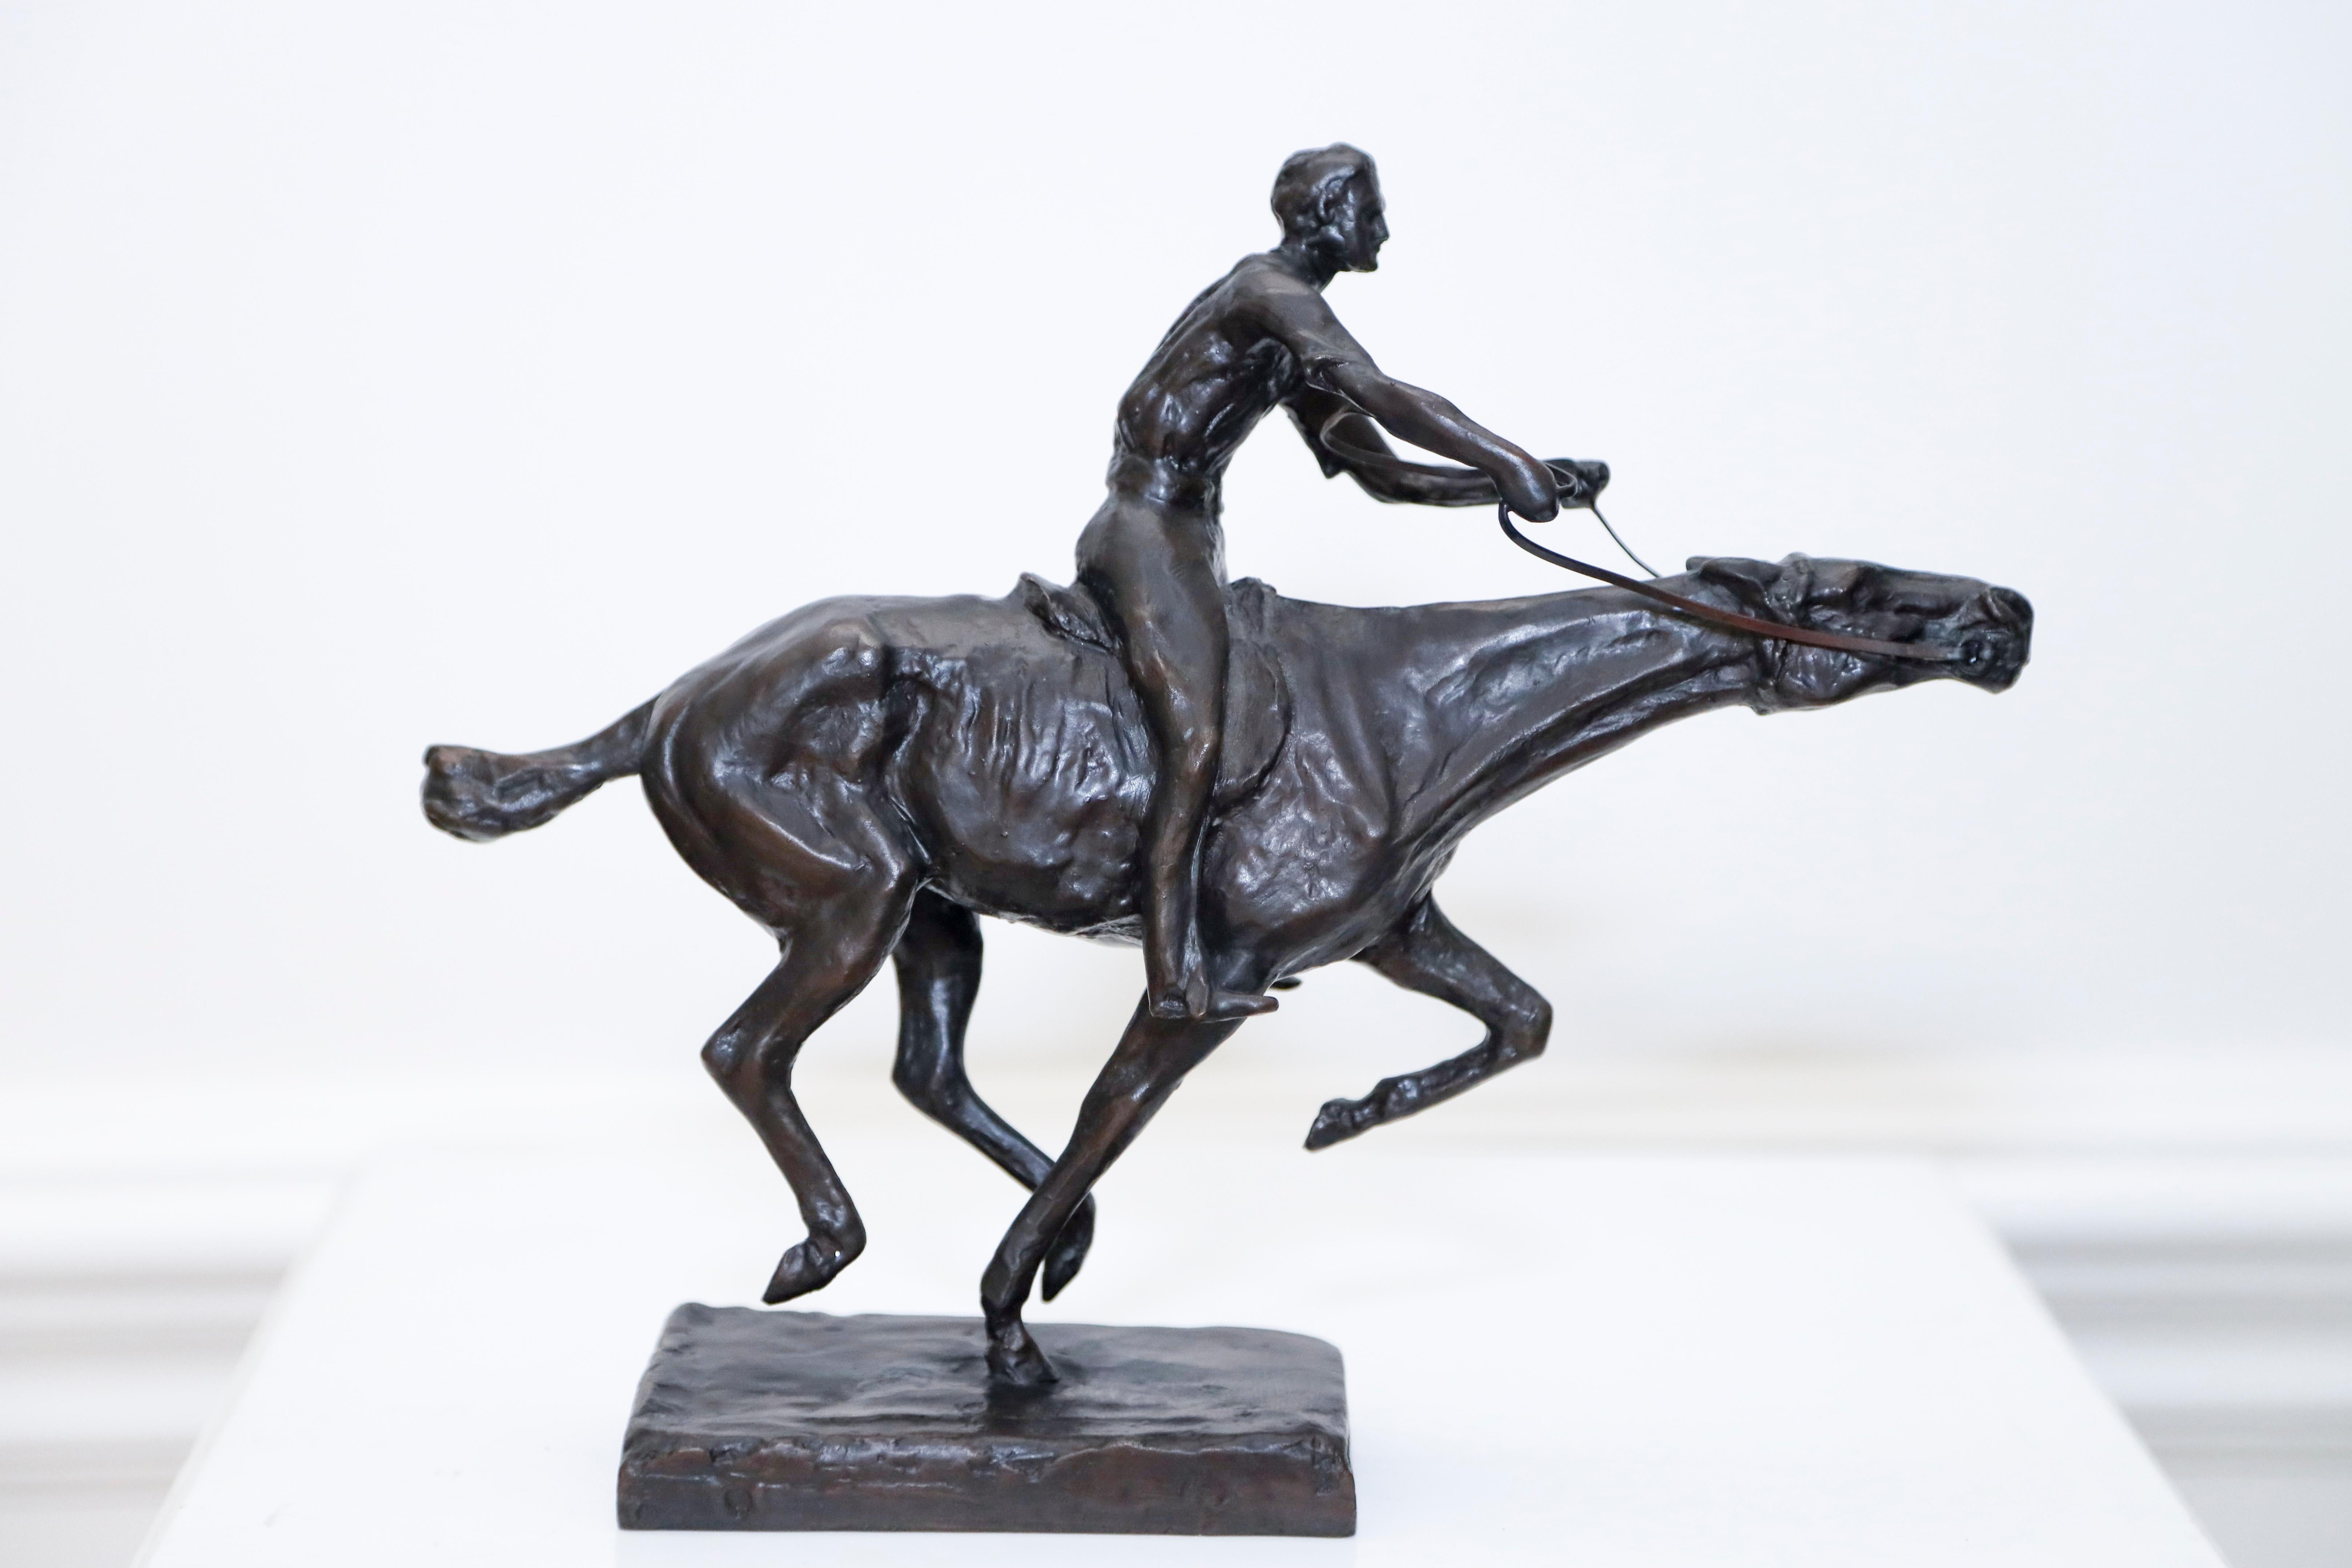 Charles Cary Rumsey Figurative Sculpture – Sie gewann das Rennen  Galloping-Pferd und Reiter aus Bronze von Charles Rumsey